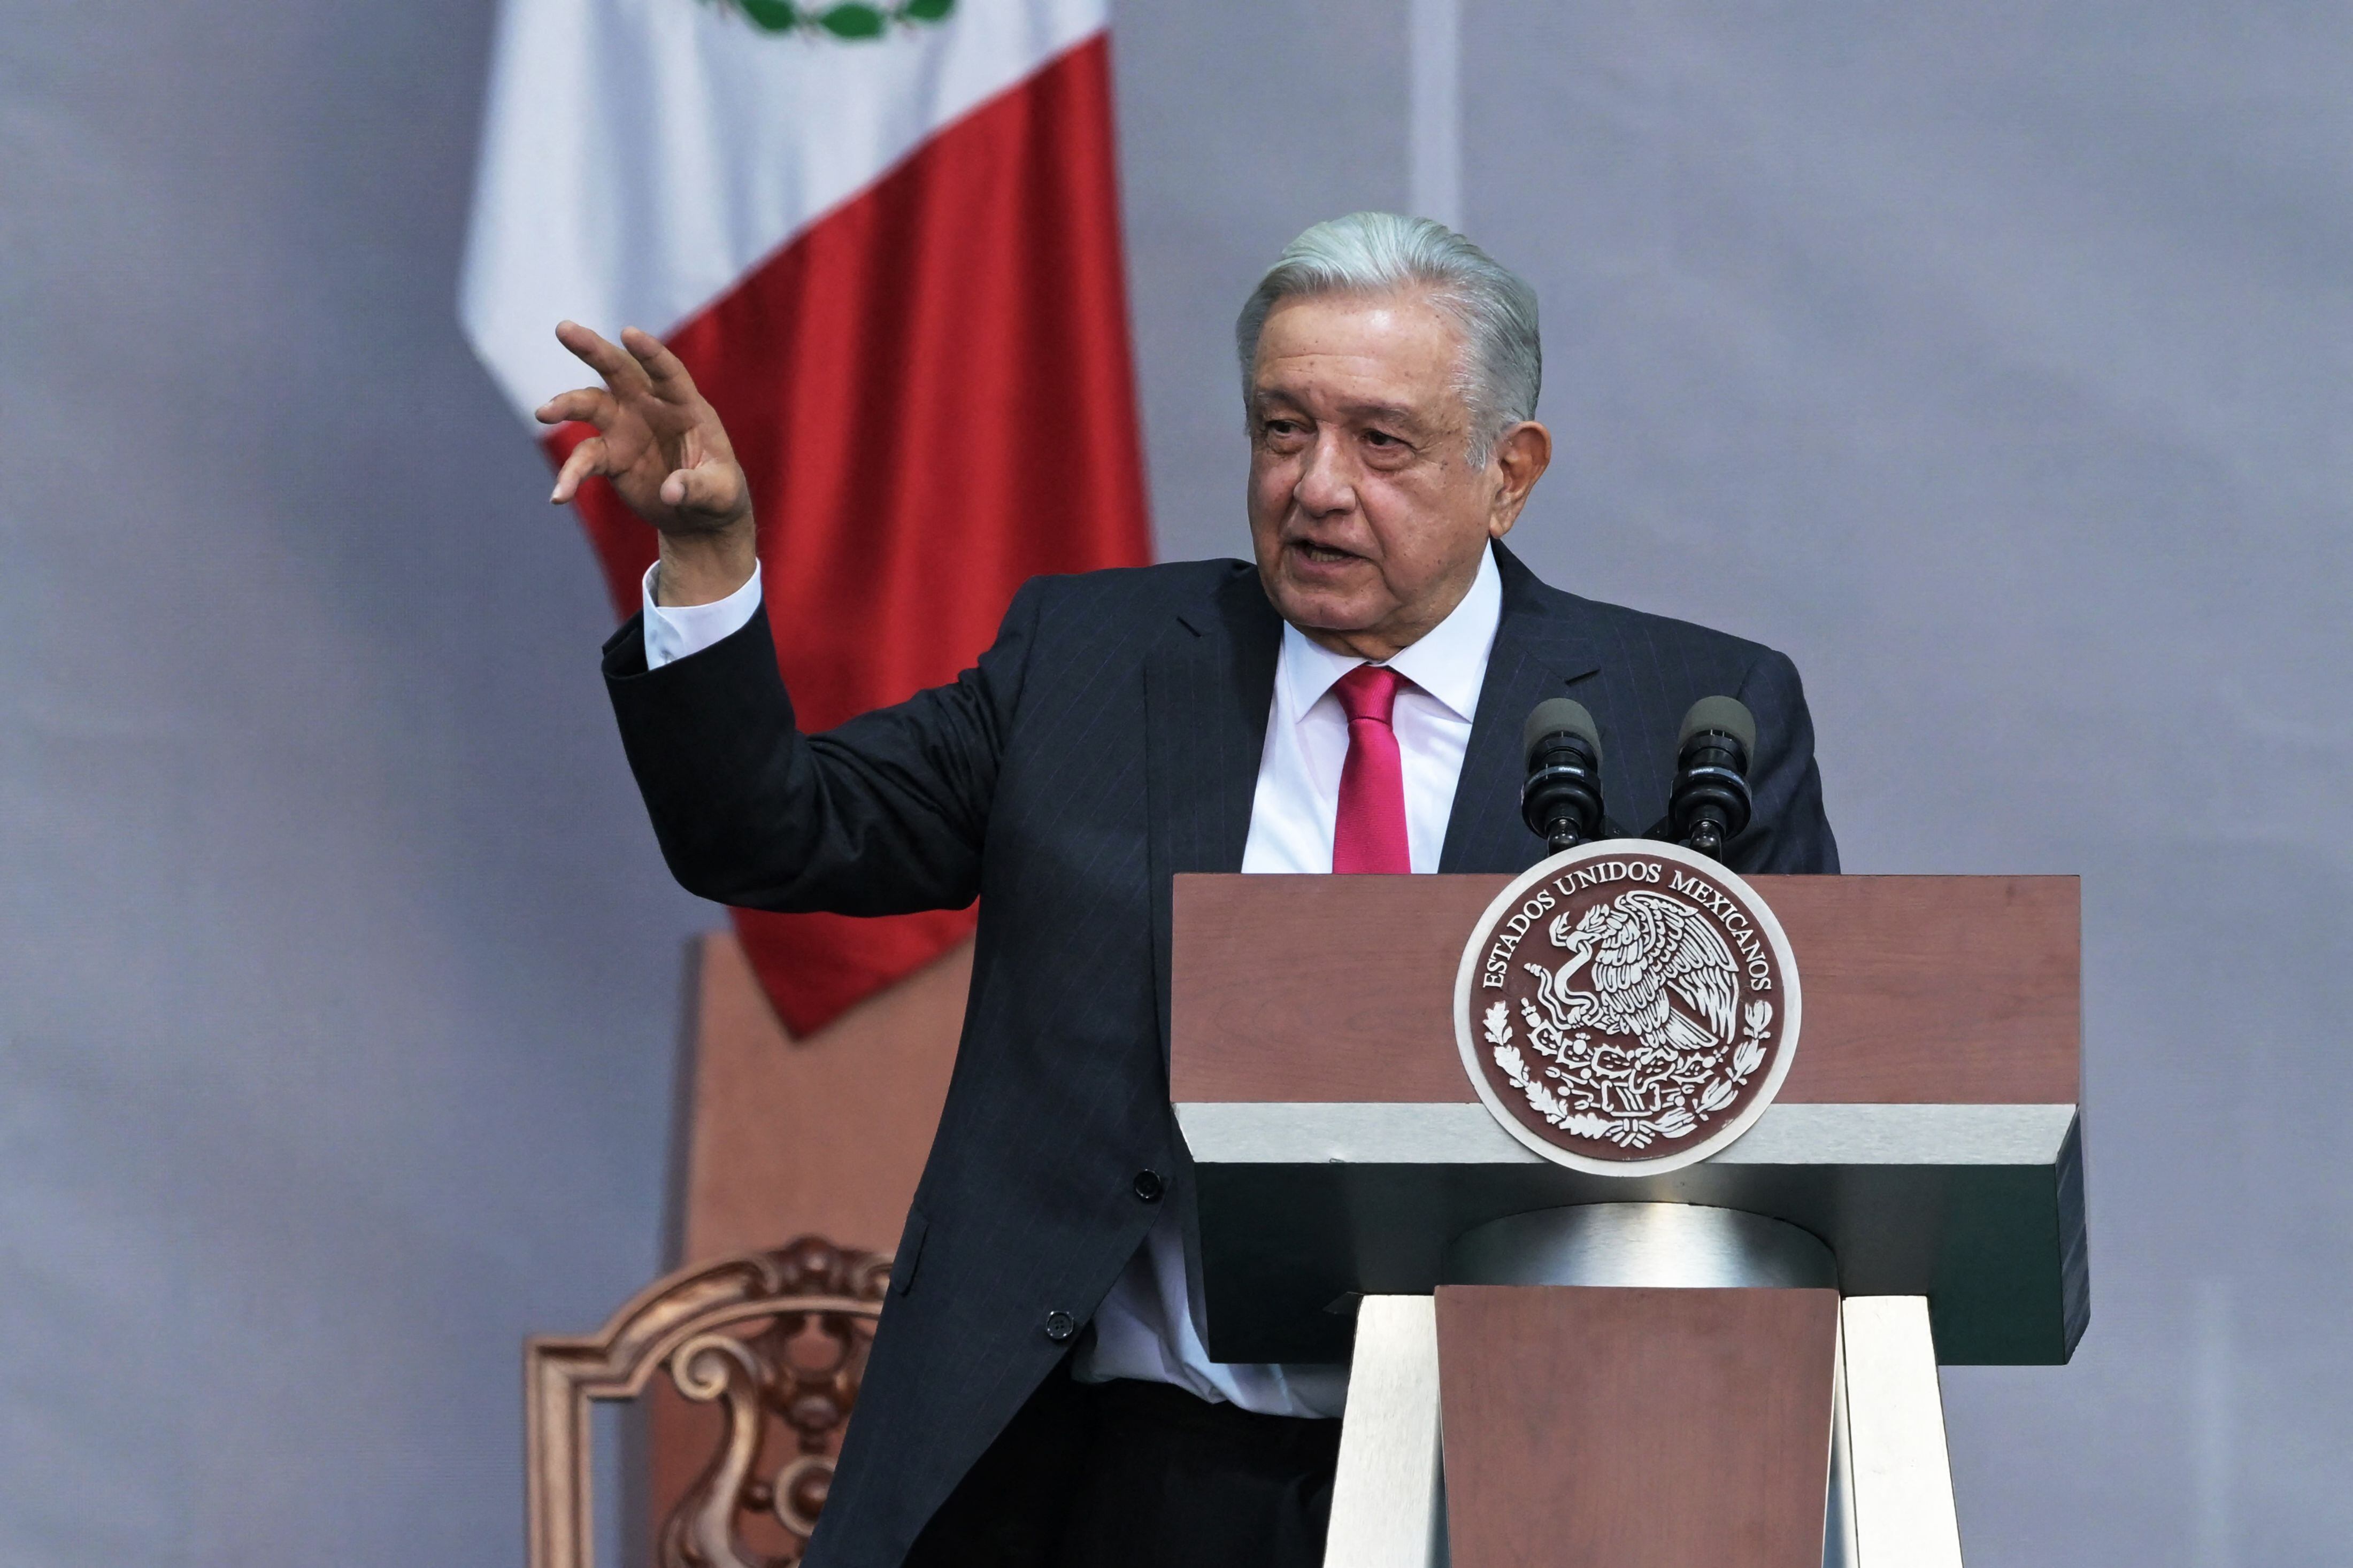 En México, el presidente izquierdista Andrés Manuel López Obrador ganó las elecciones en alianza con el ultraconservador Partido Encuentro Social (PES) y manifiesta su formación adventista.